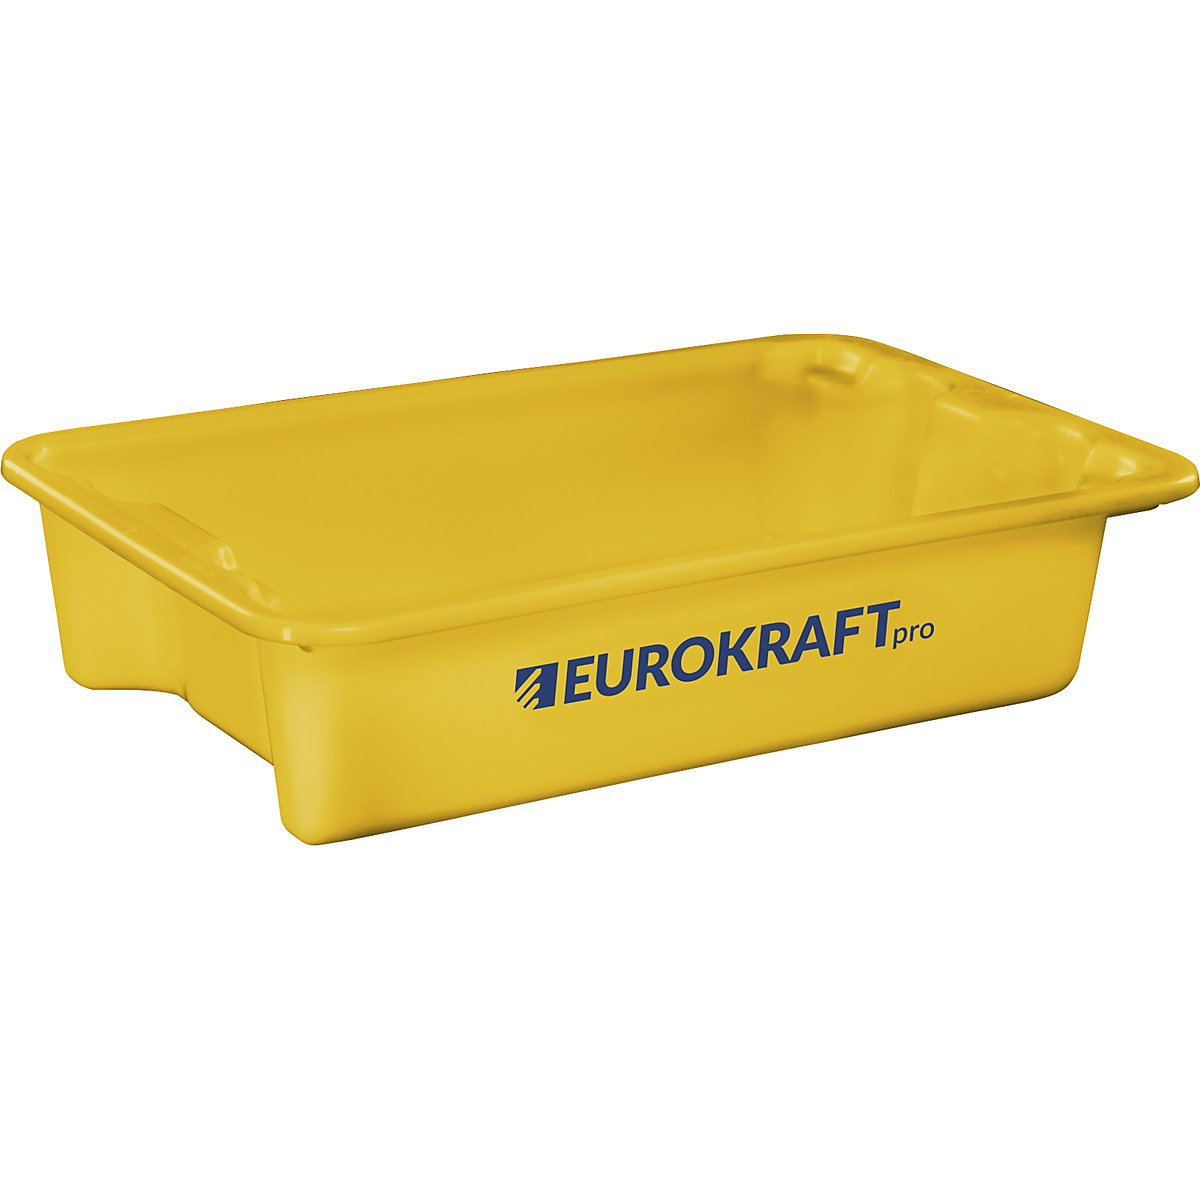 EUROKRAFTpro – Zasučna posoda za zlaganje iz polipropilena, primernega za živila, prostornina 18 l, DE 3 kosi, stene in dno zaprti, rumena